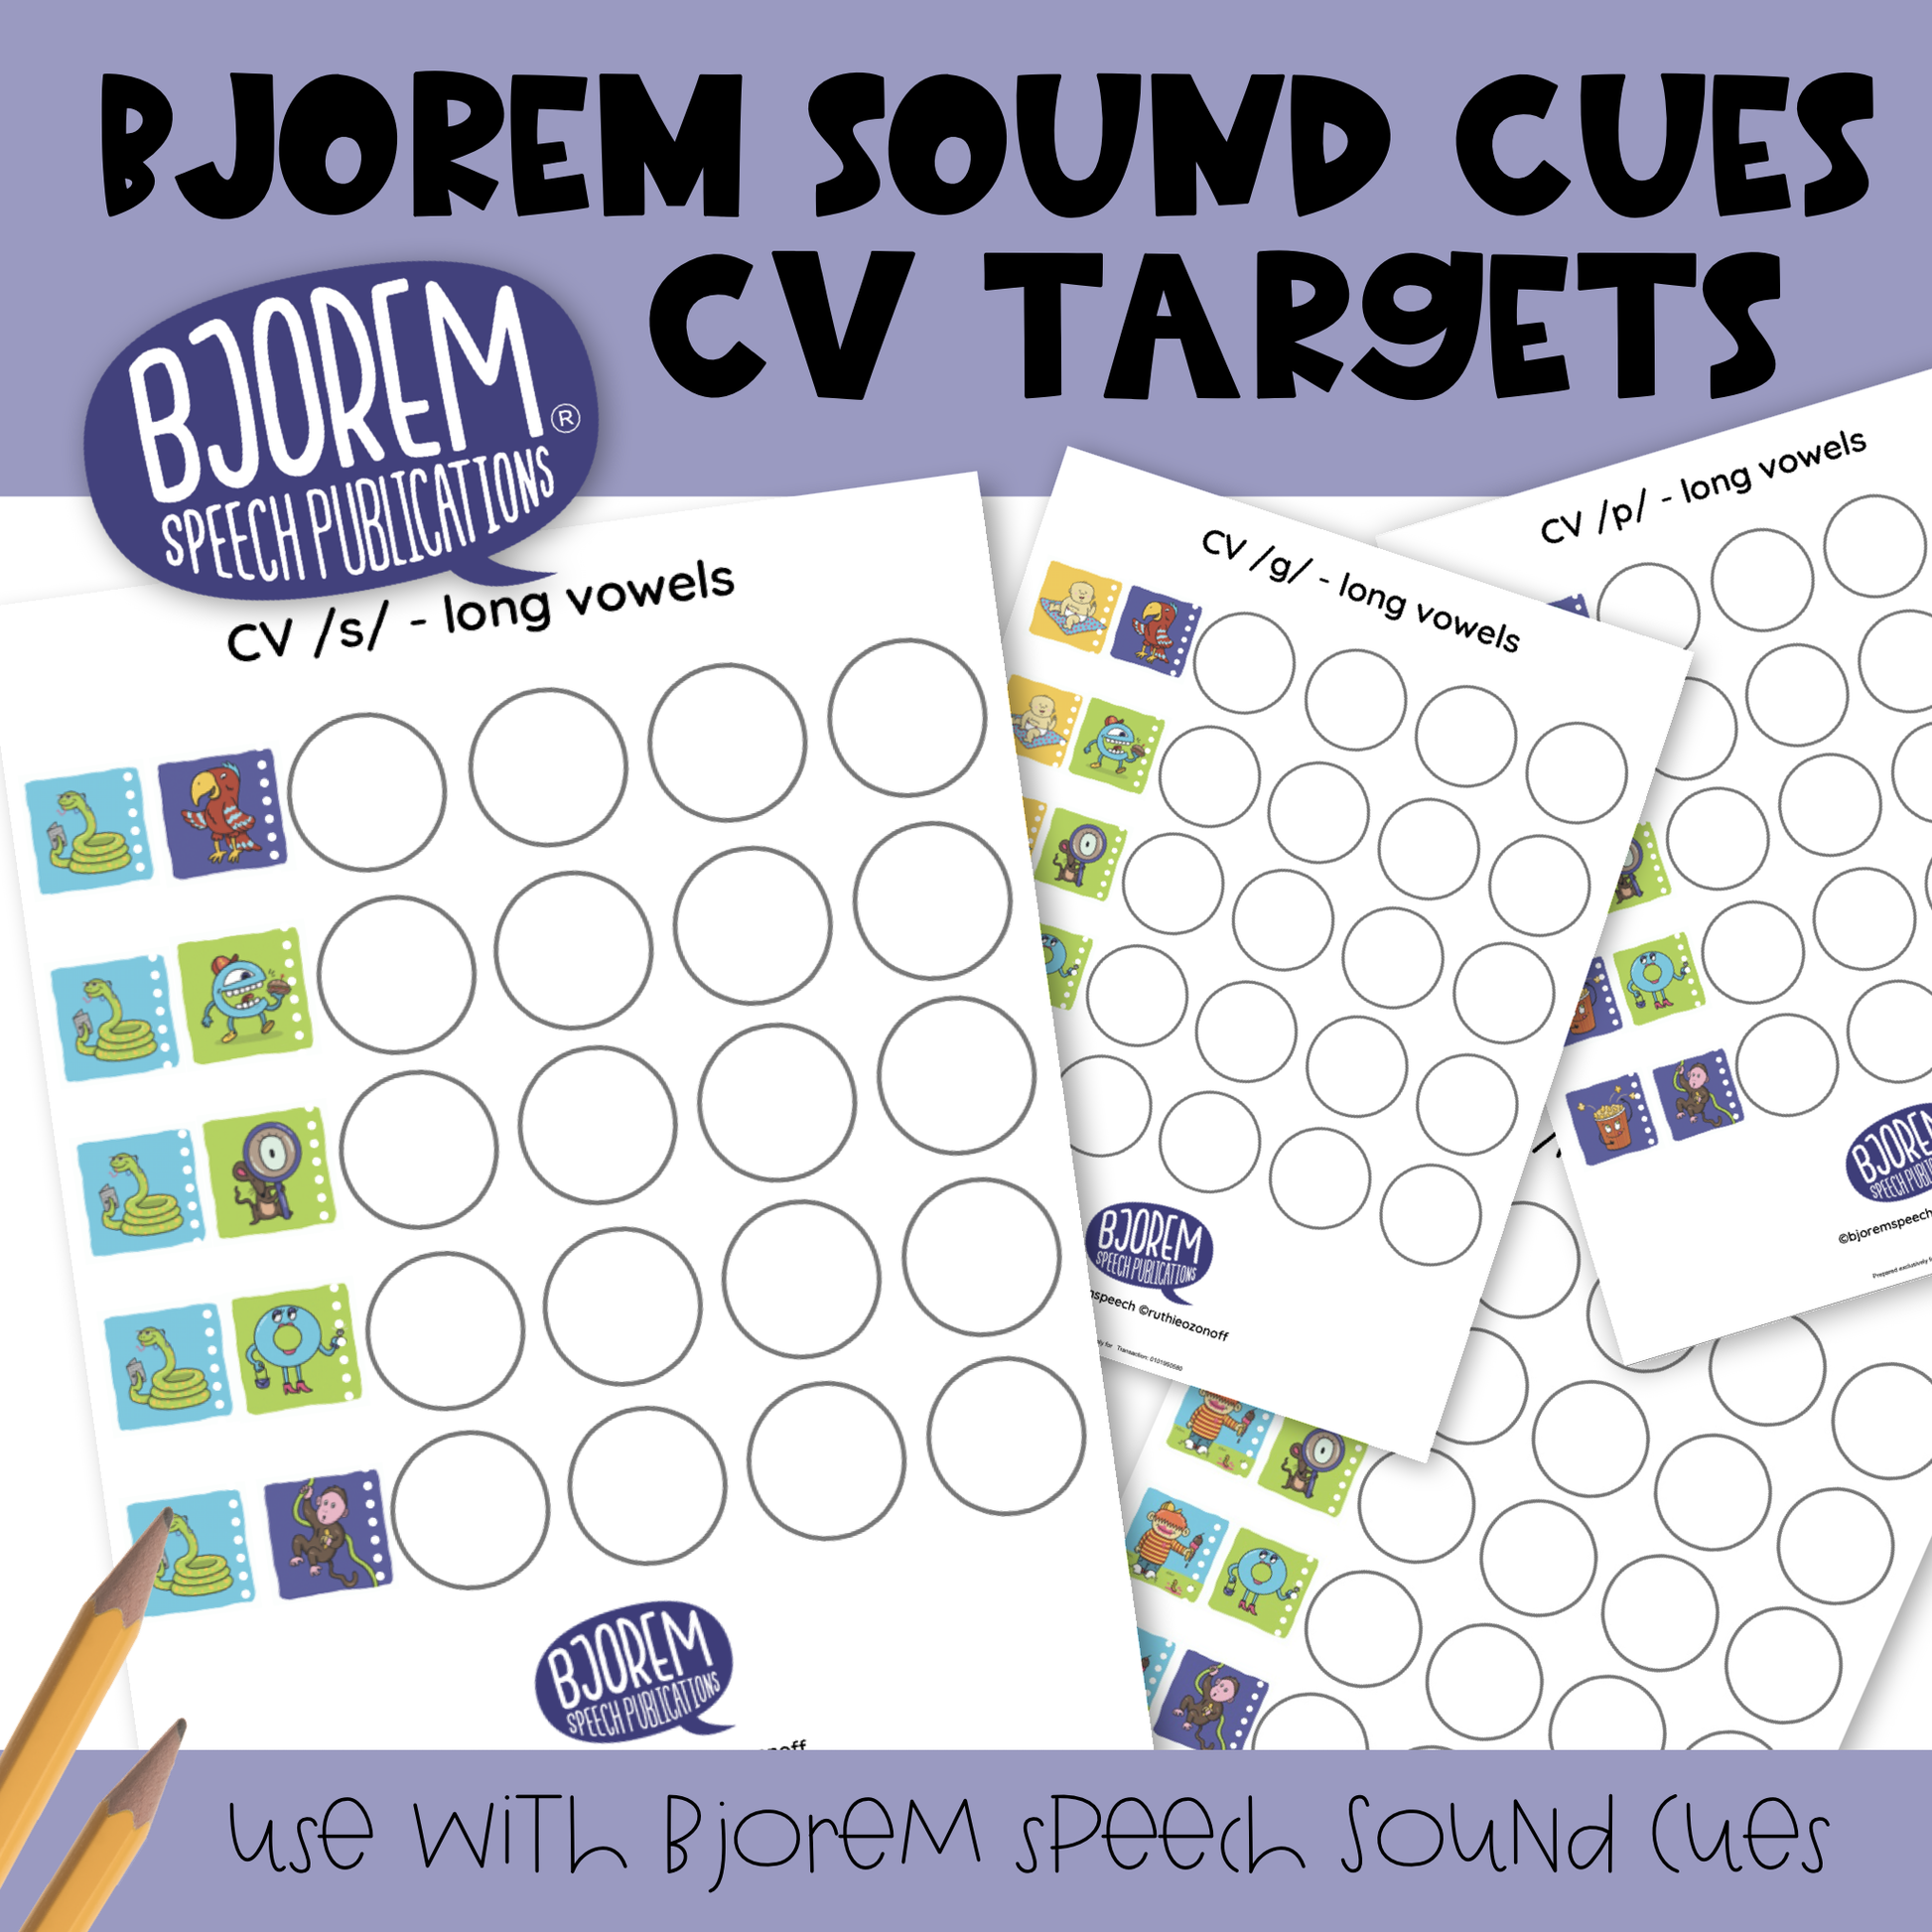 [title]Bjorem Sound Cues - CV Target Sheets Download